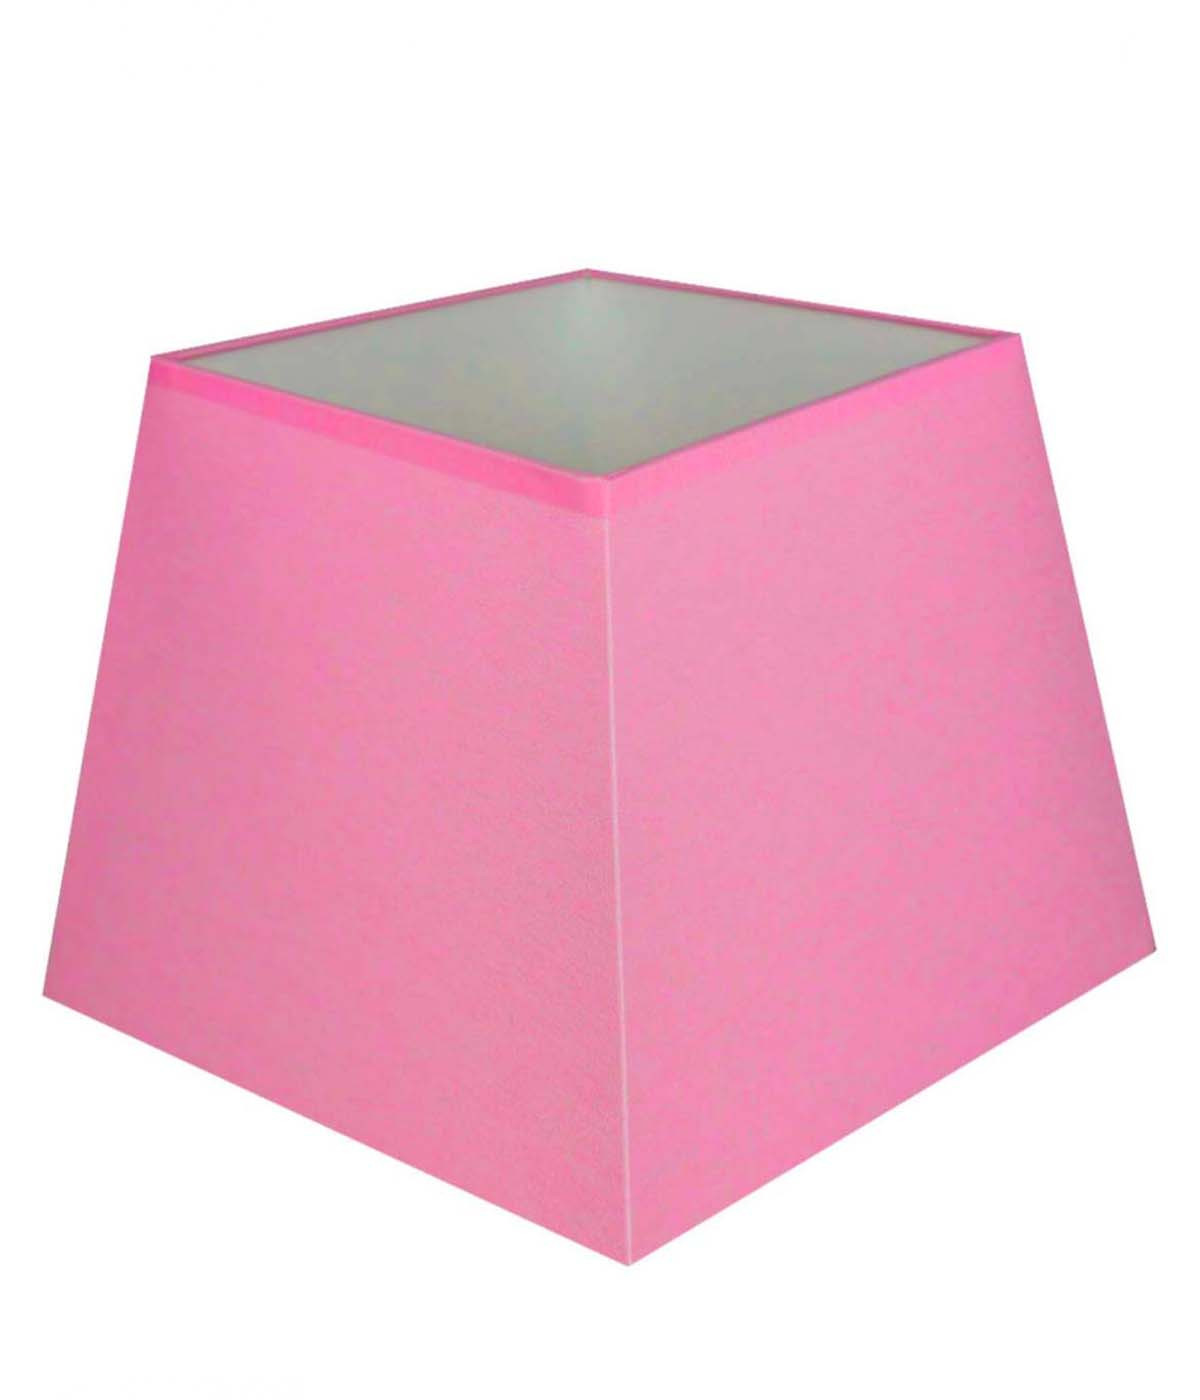 Pink pyramidal square shade